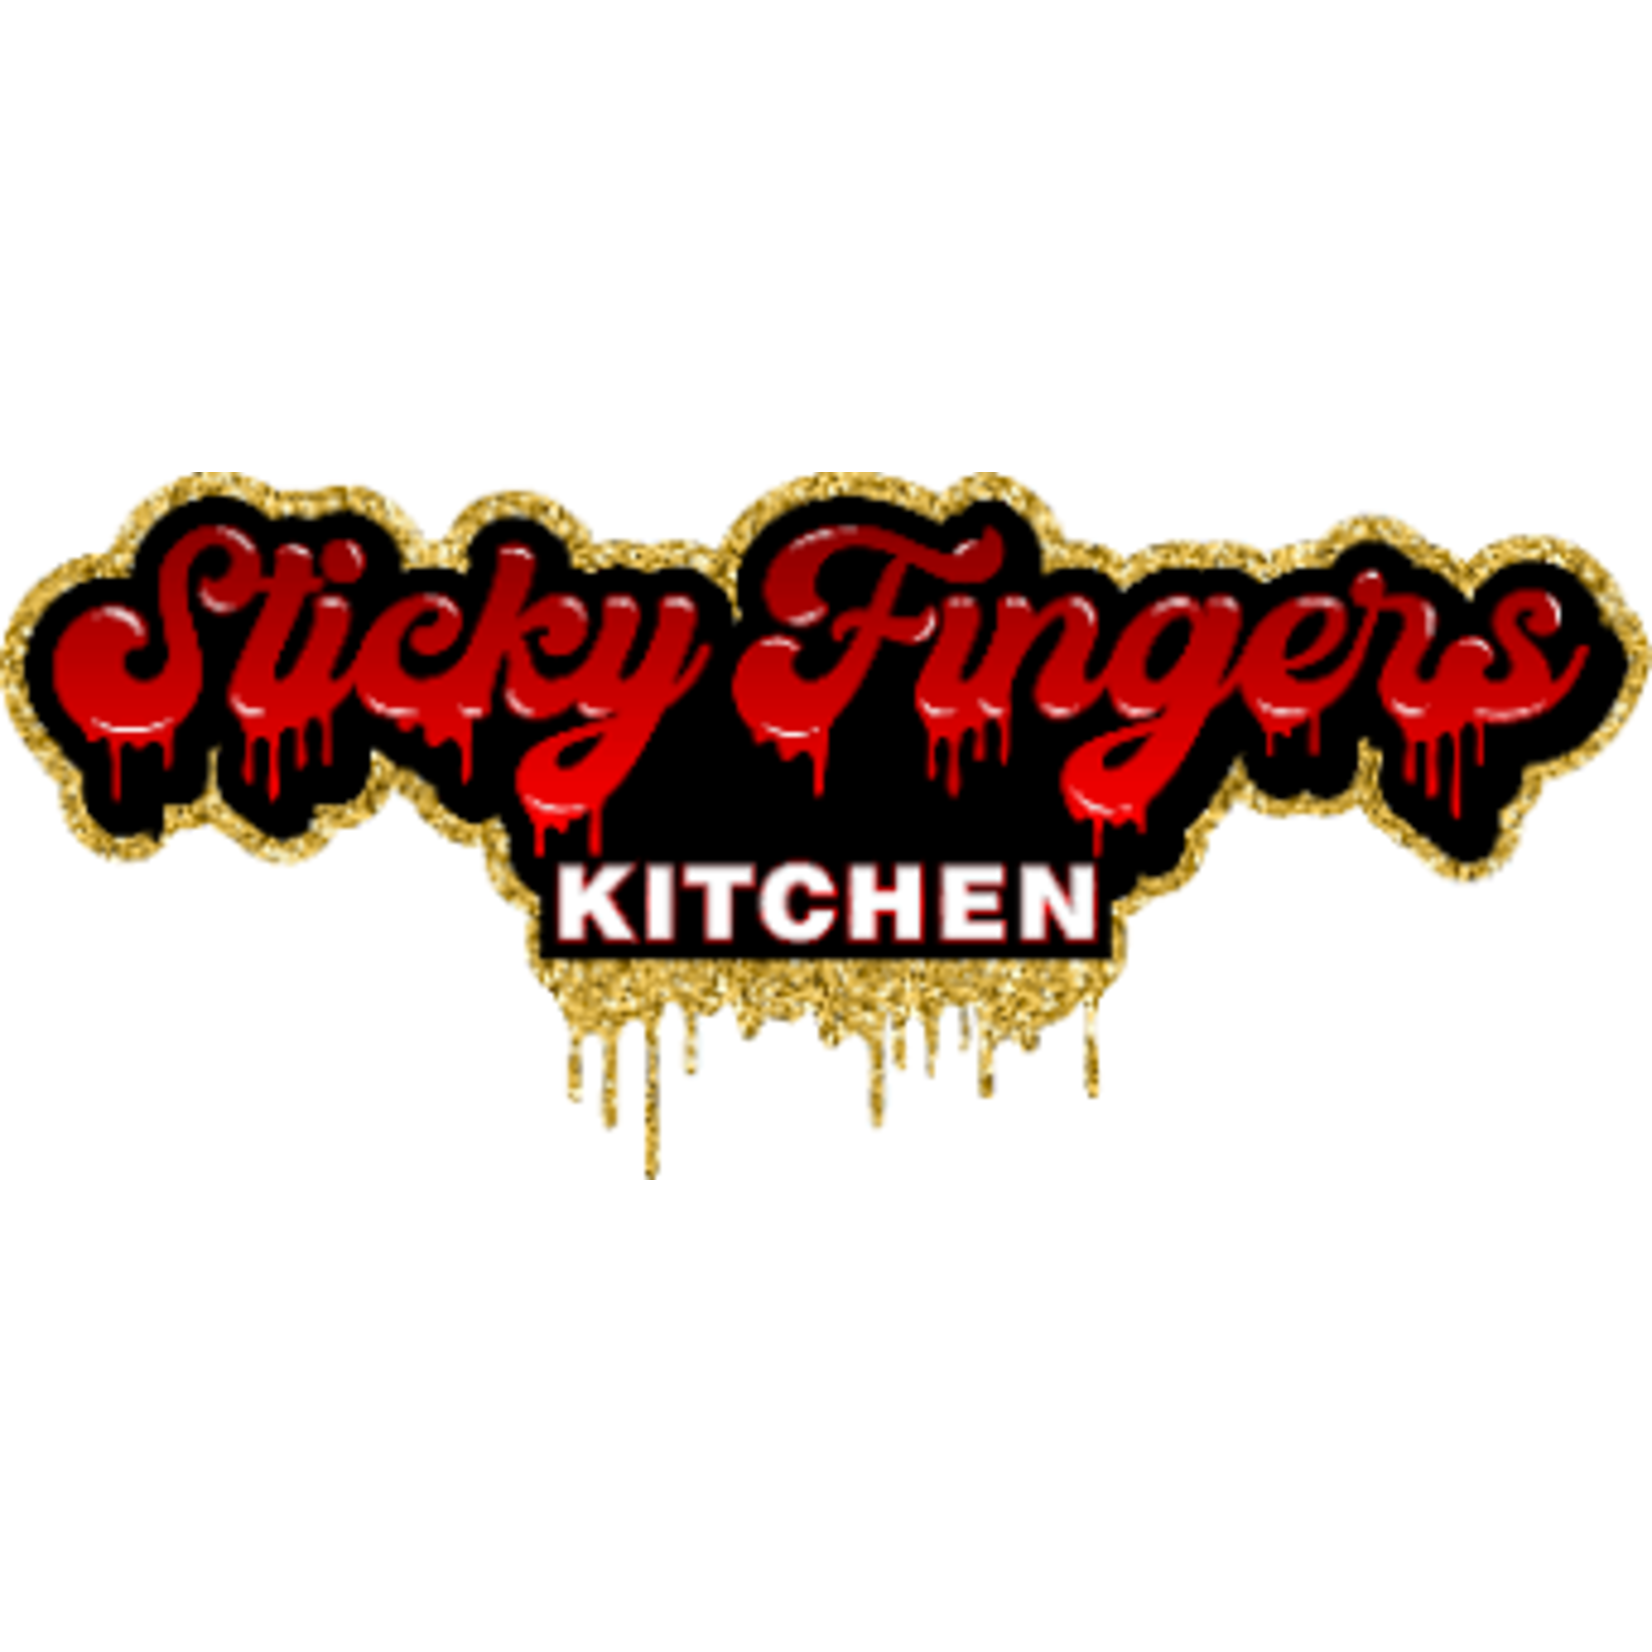 Sticky Fingers Kitchen -Carpentersville Sticky Fingers Kitchen- Carpentersville